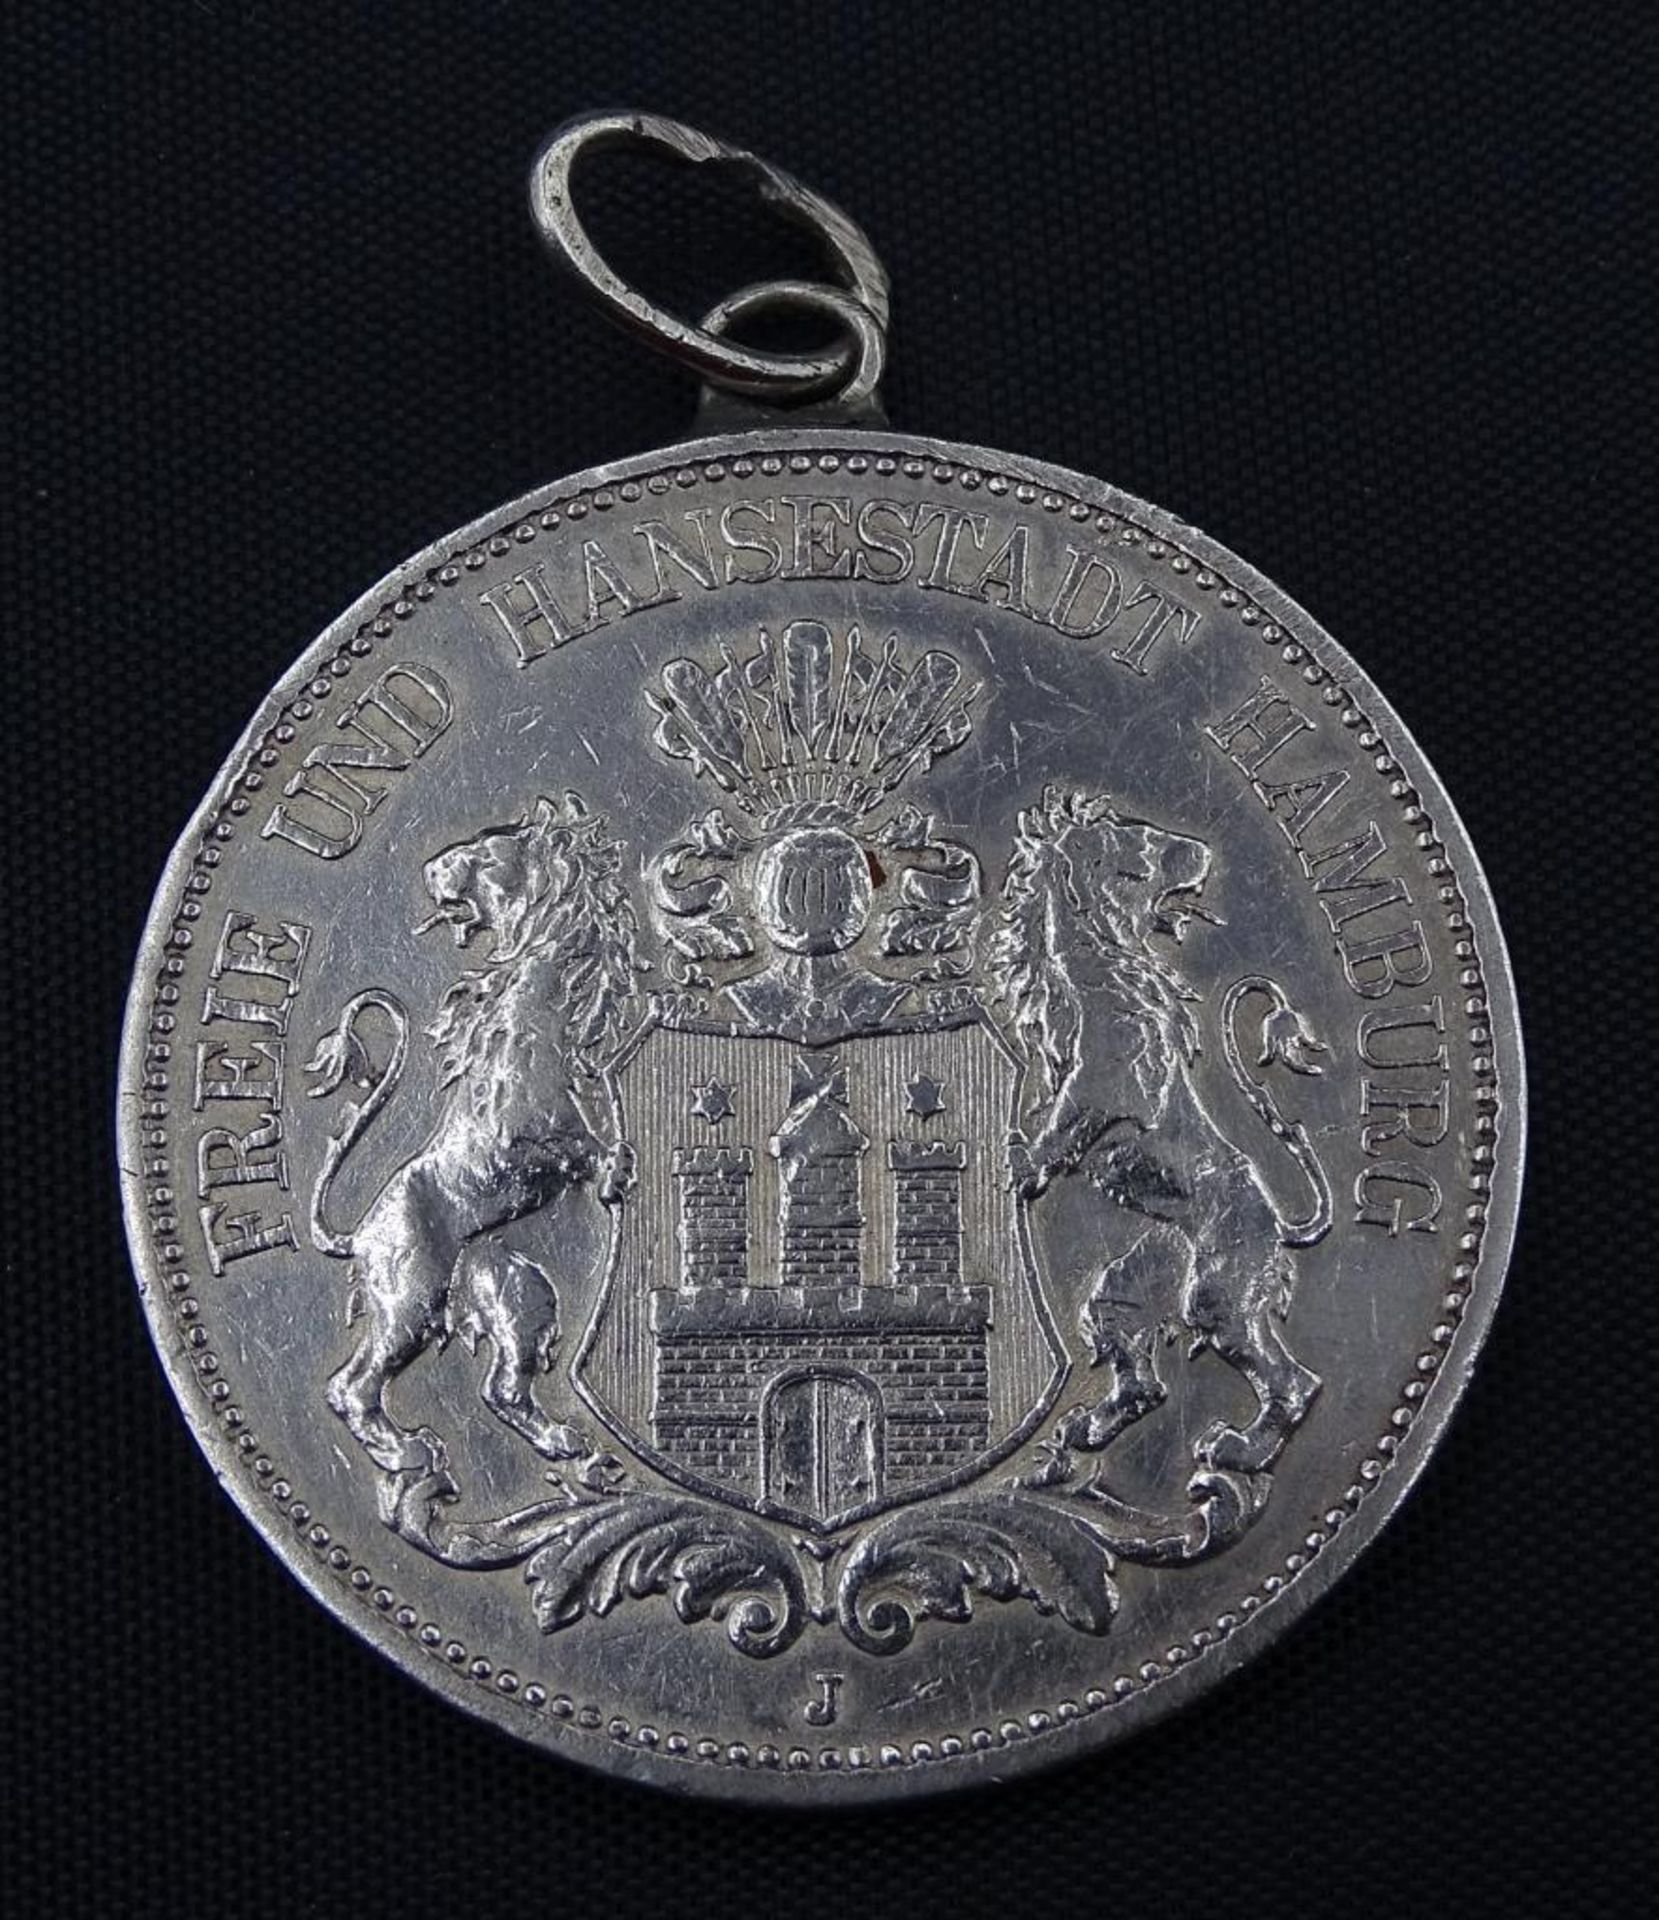 Fünf Mark 1898,Deutsches Reich,Freie und Hansestadt Hamburg",Silber,gehenkel - Bild 2 aus 2